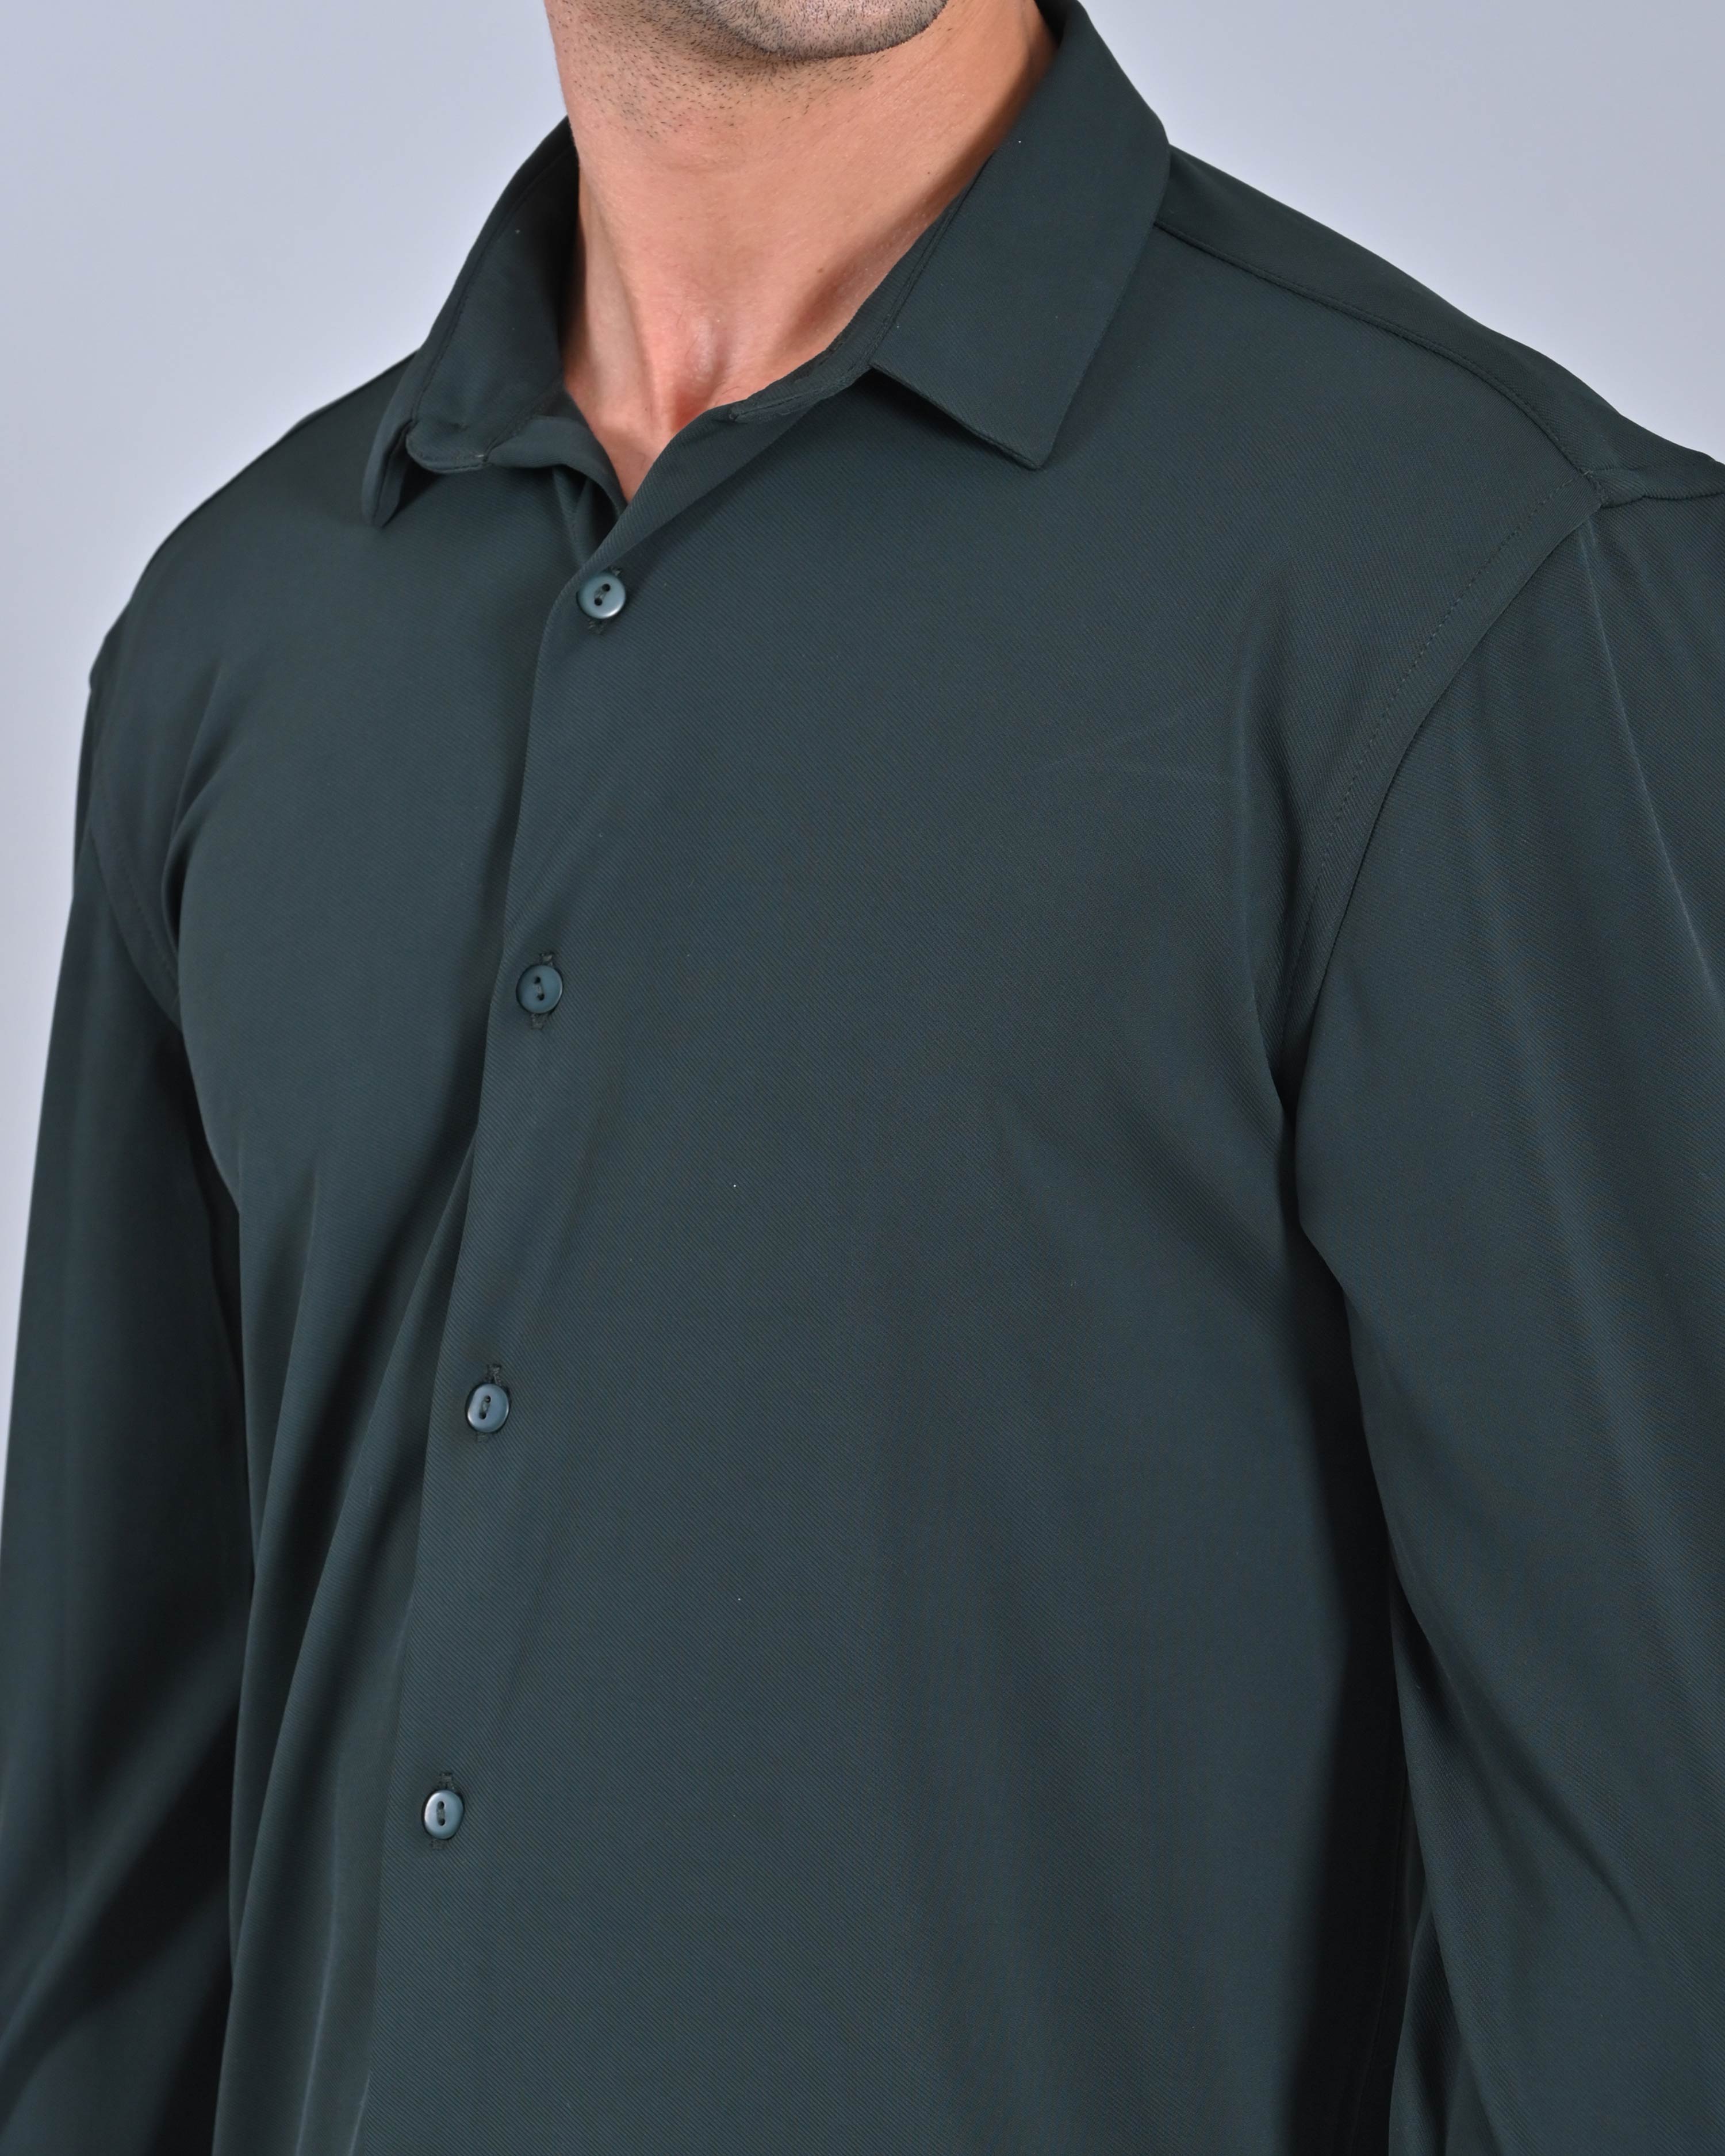 Buy Men's Dark Grey Full Sleeve Shirt 